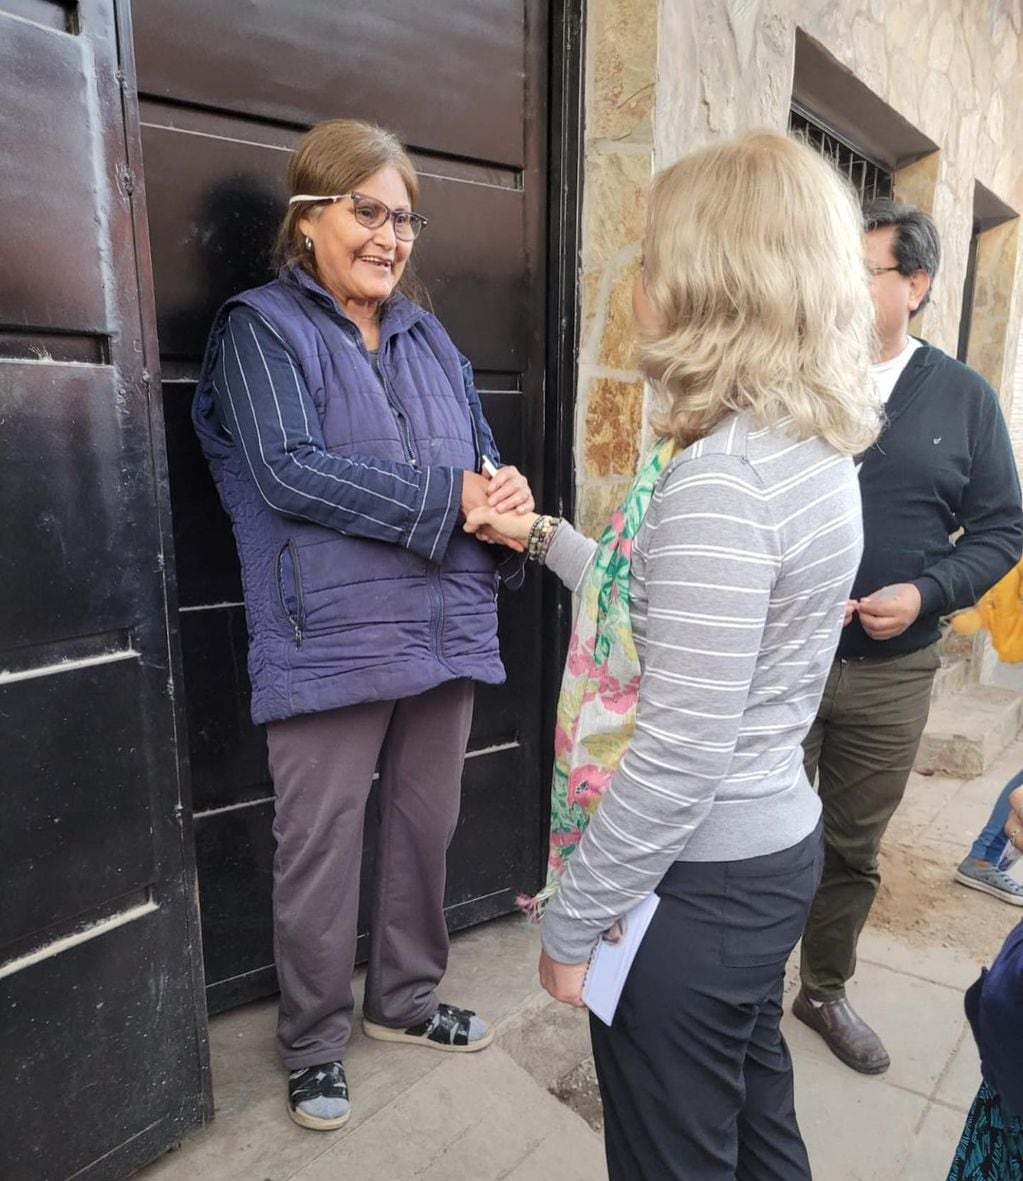 La candidata Liliana Fellner, aspirante a intendente de San Salvador Jujuy, recorre los barrios para dialogar en persona con el vecindario.